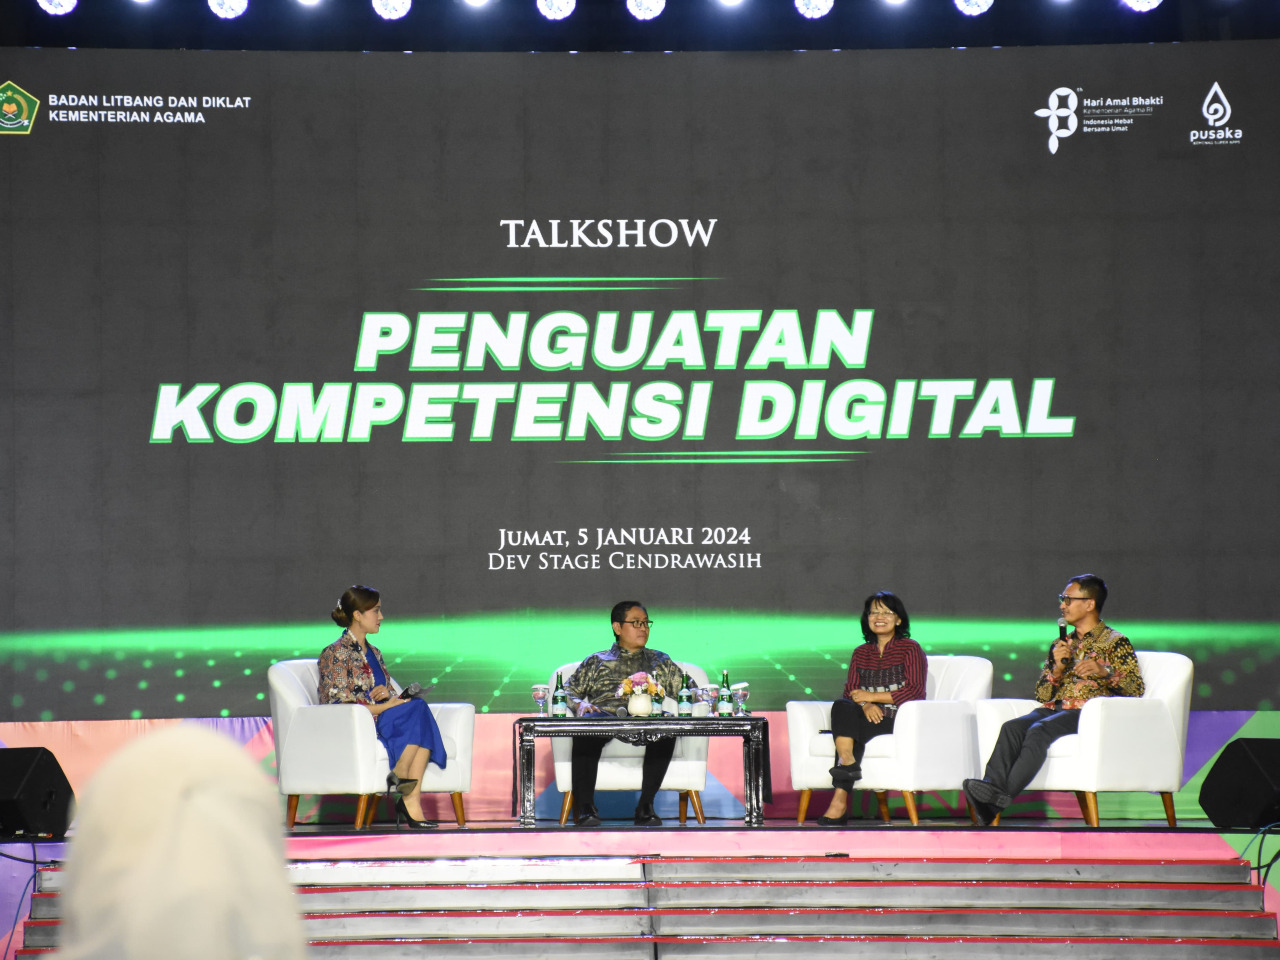 Talkshow Penguatan Kompetensi Digital Bahas Transformasi ASN di Era Digital

